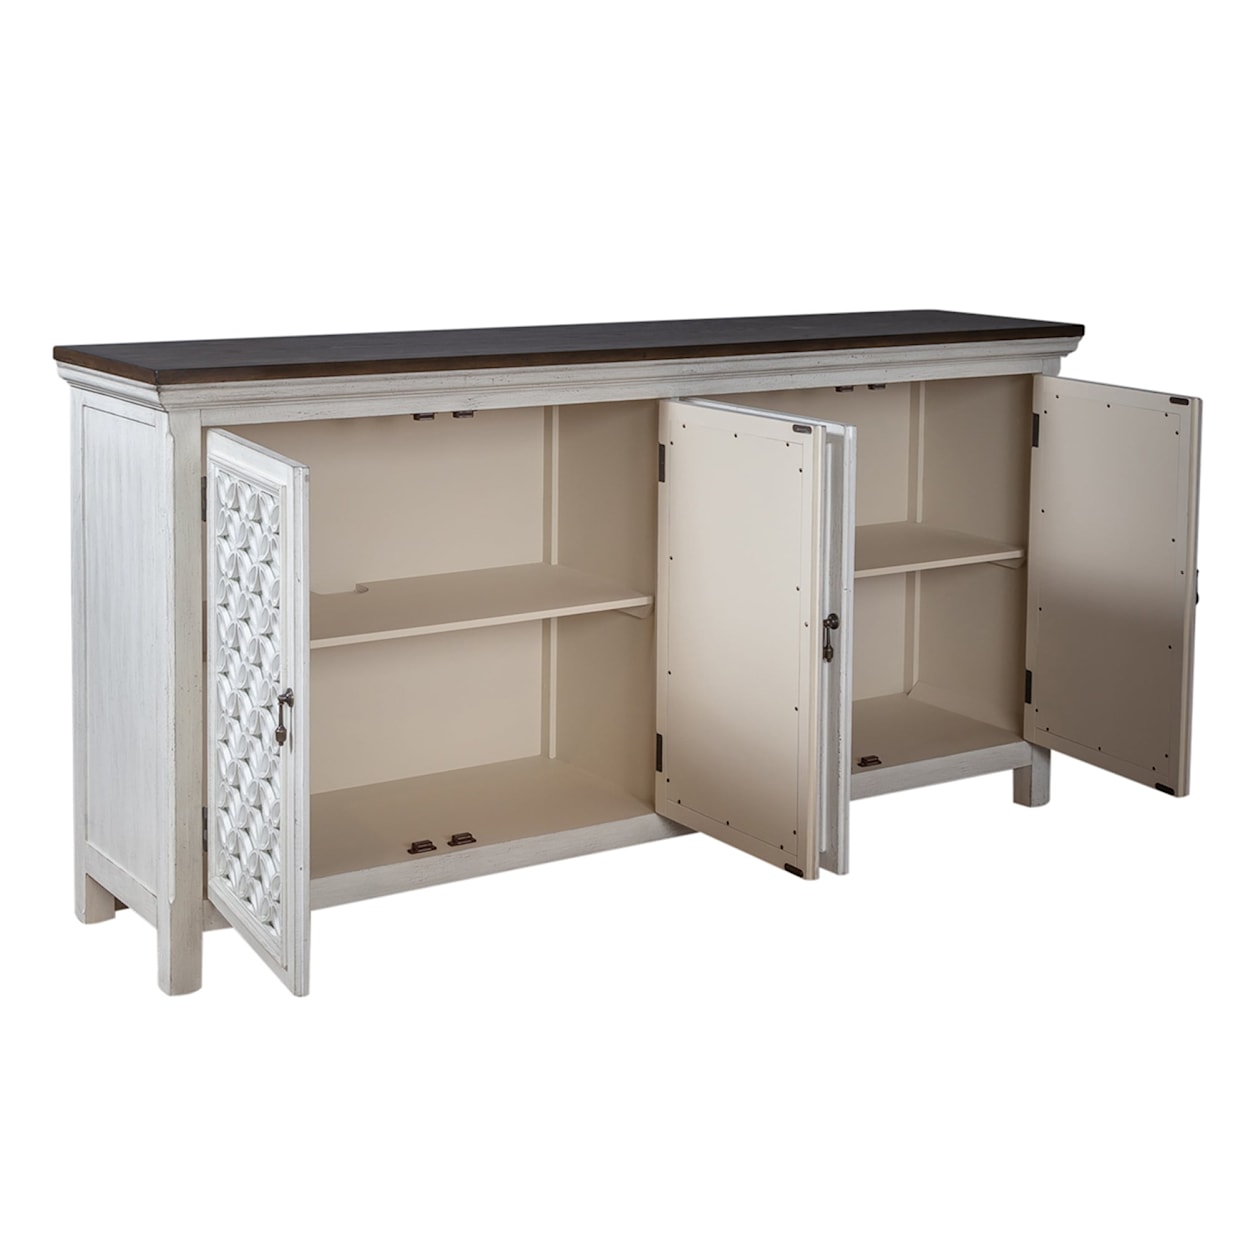 Liberty Furniture Westridge 4-Door Accent Cabinet